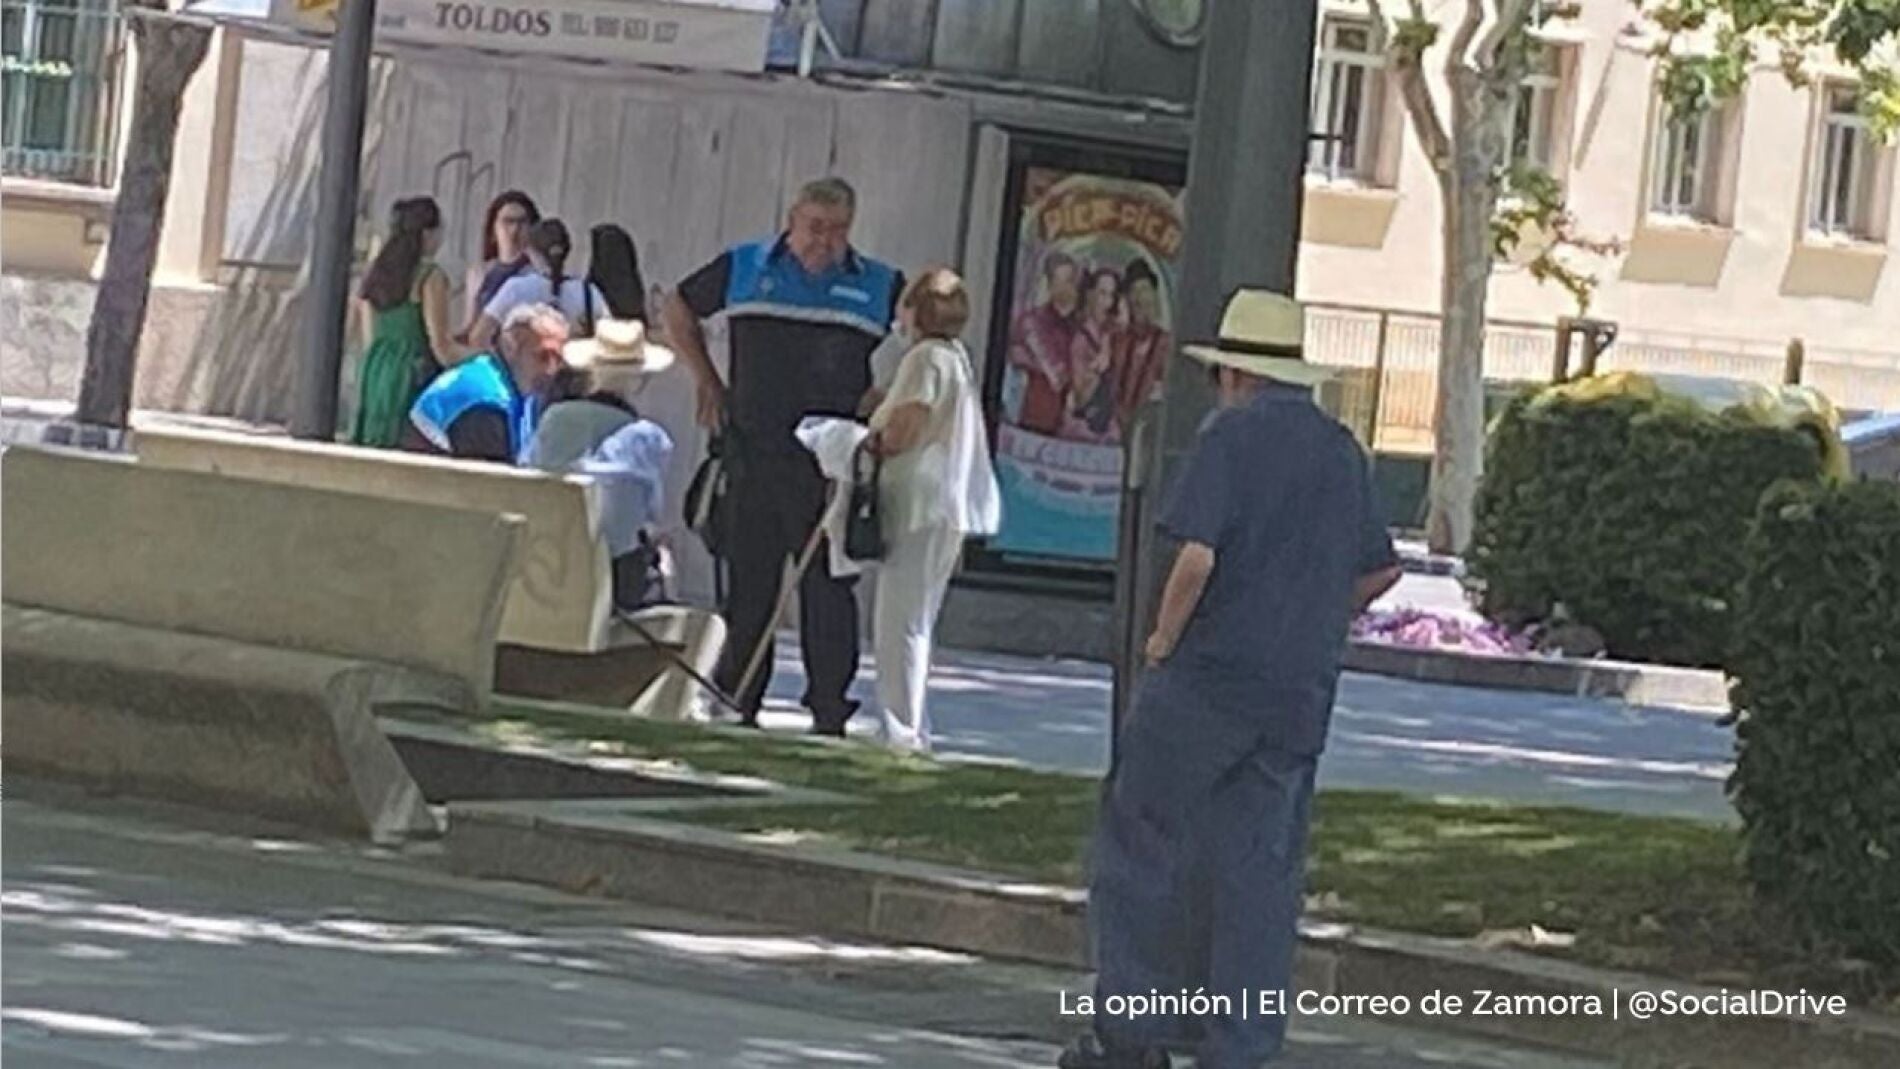 Una pareja de ancianos practica sexo oral a plena luz del día en una plaza de Zamora foto imagen